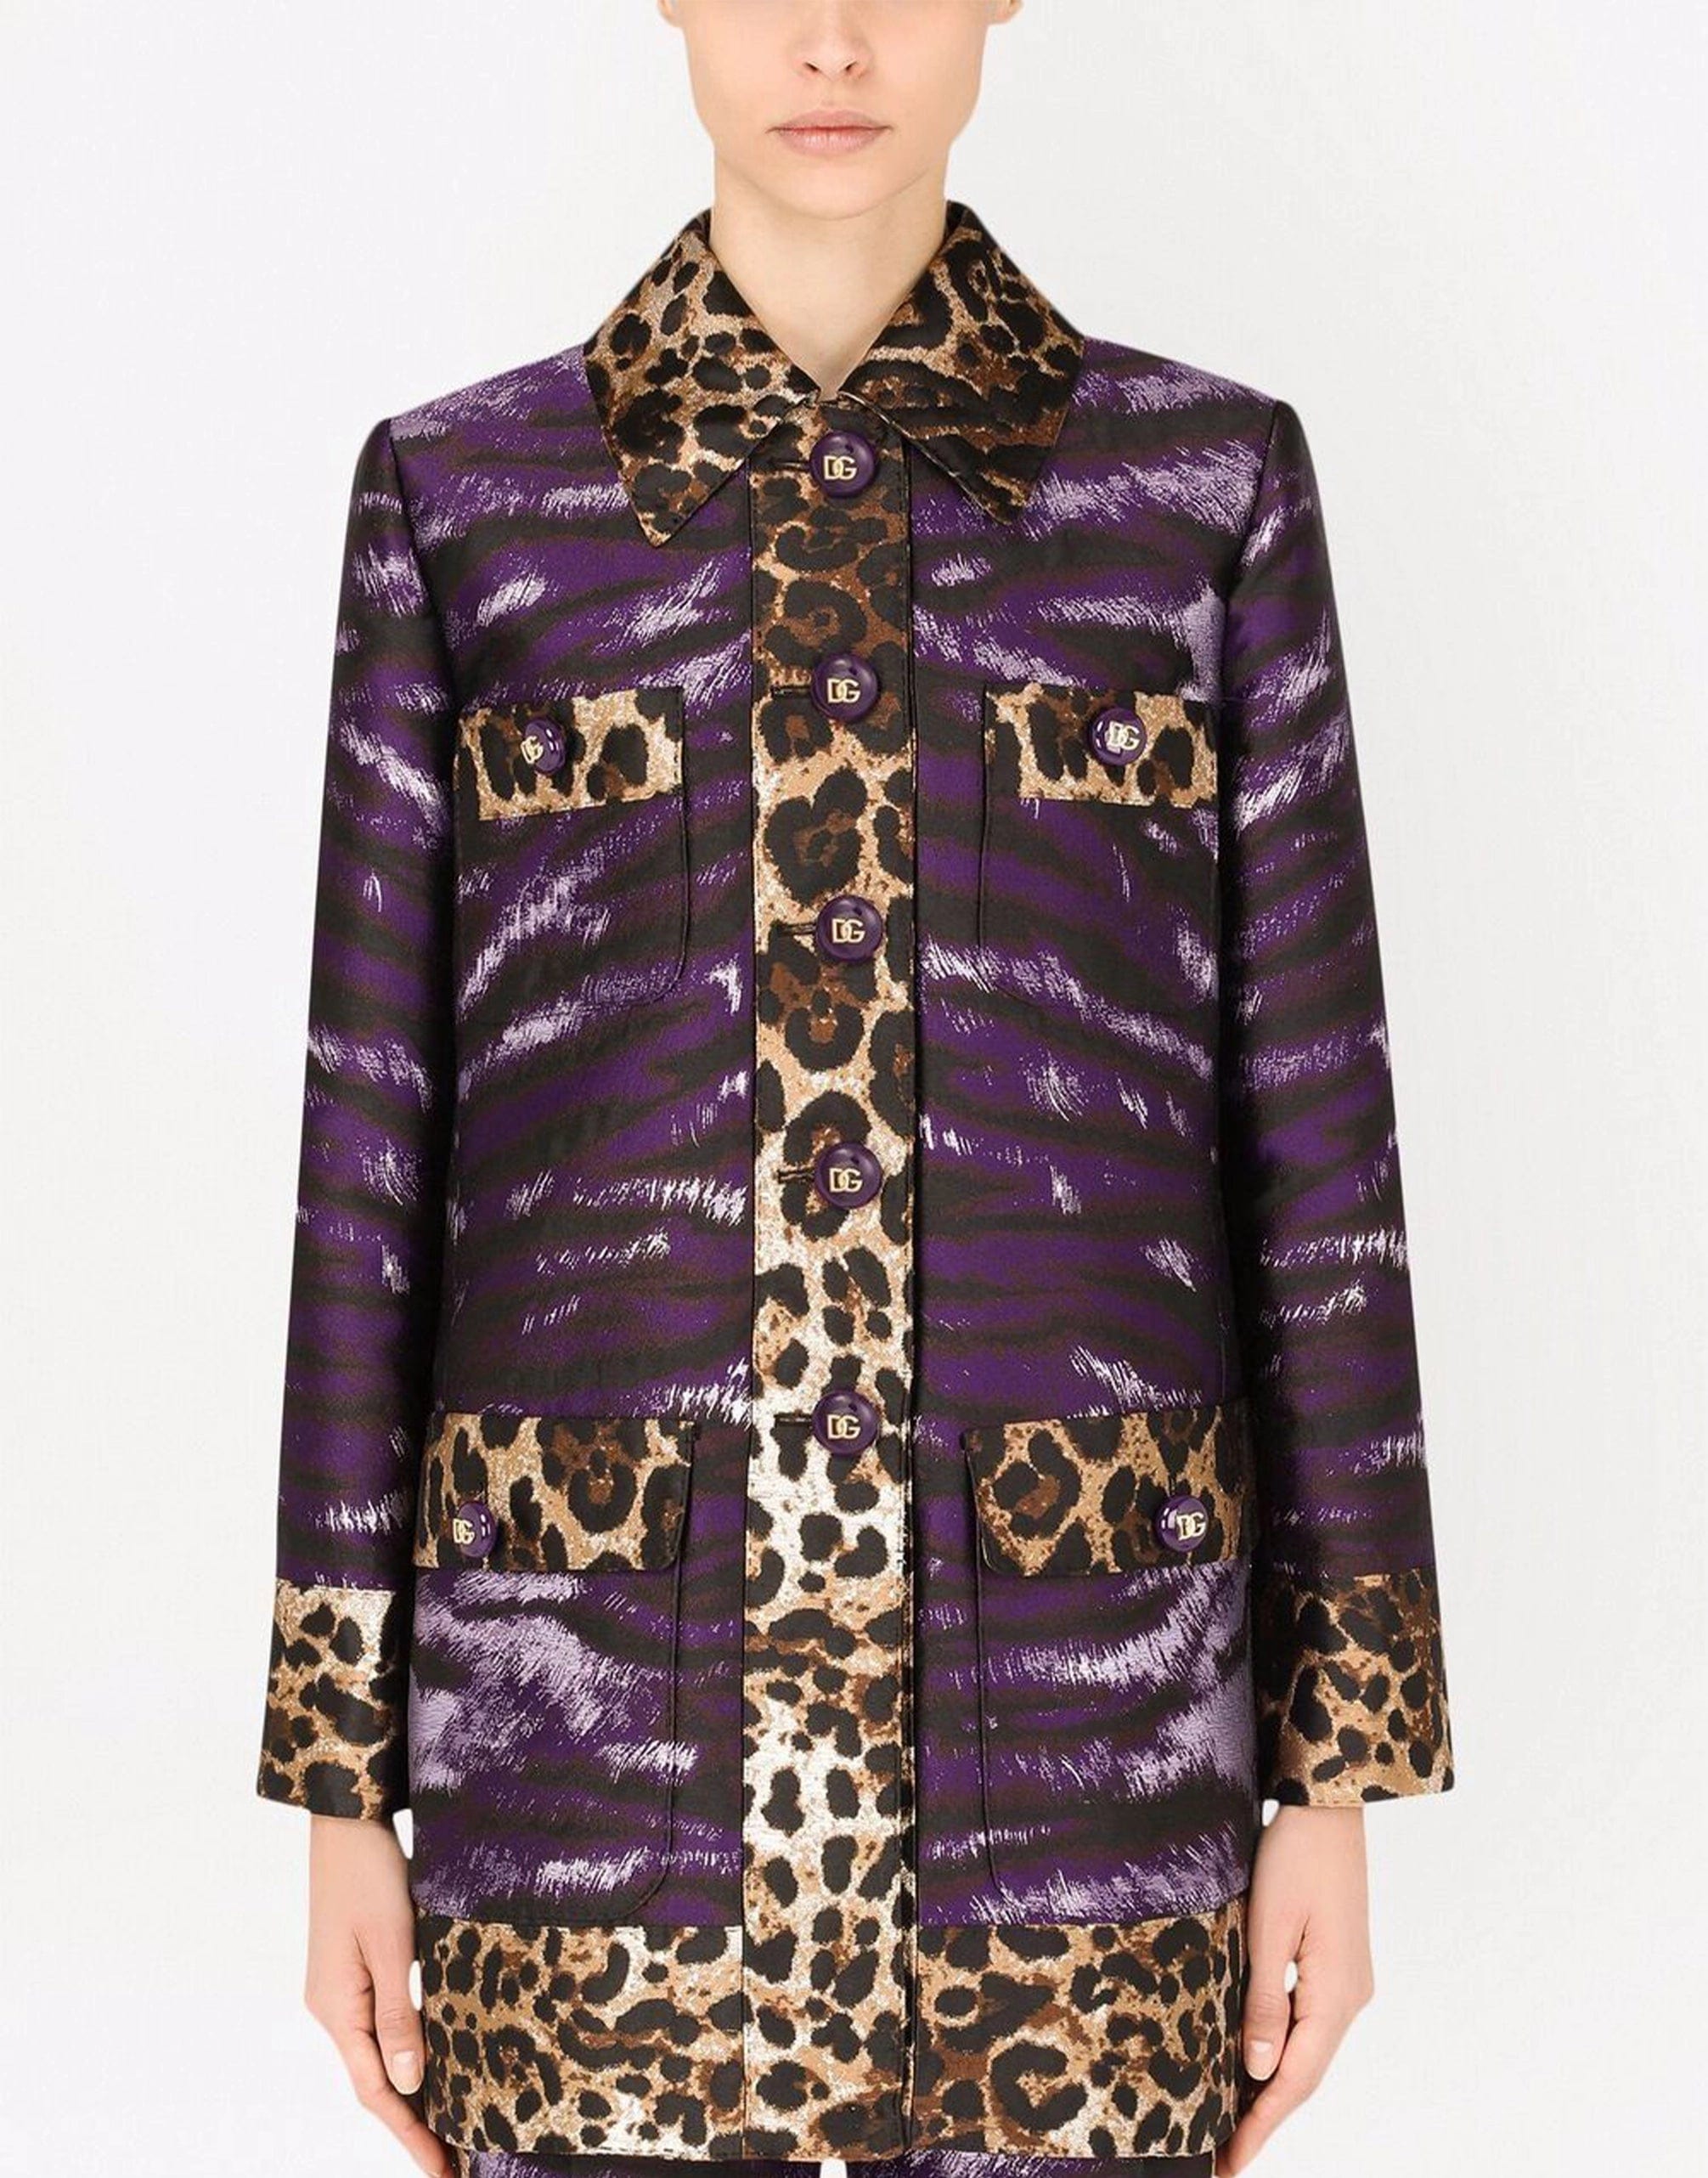 Lamé Jacquard Jacket With Tiger Print